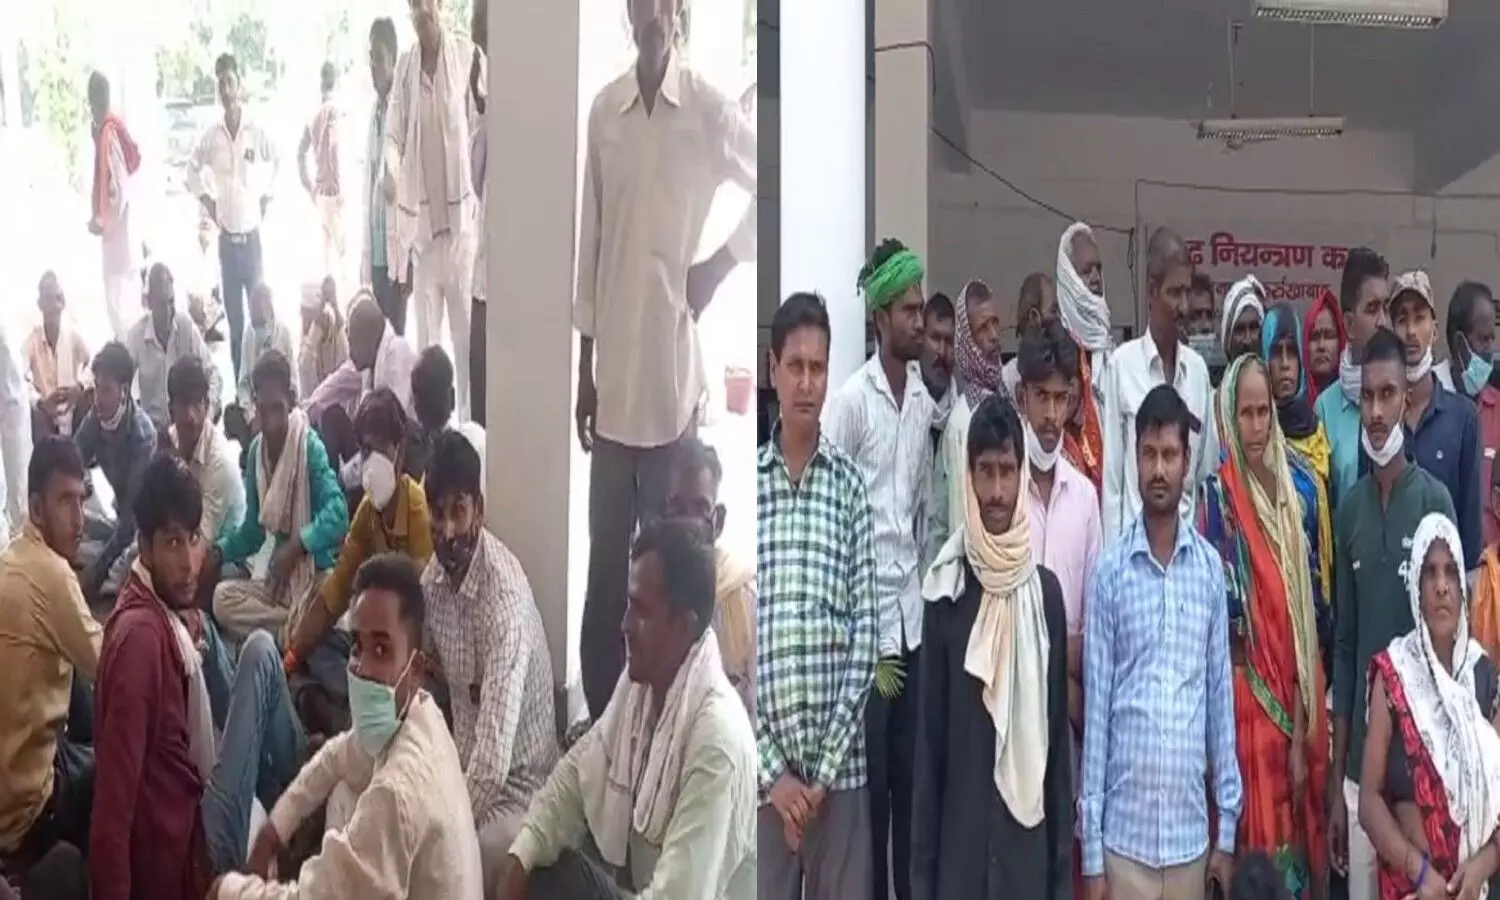 Farrukhabad News: बिजली विभाग की बड़ी लापरवाही, बिना कनेक्शन के बनाए हजारों के बिल, गुस्साए गांव वालों ने किया प्रदर्शन